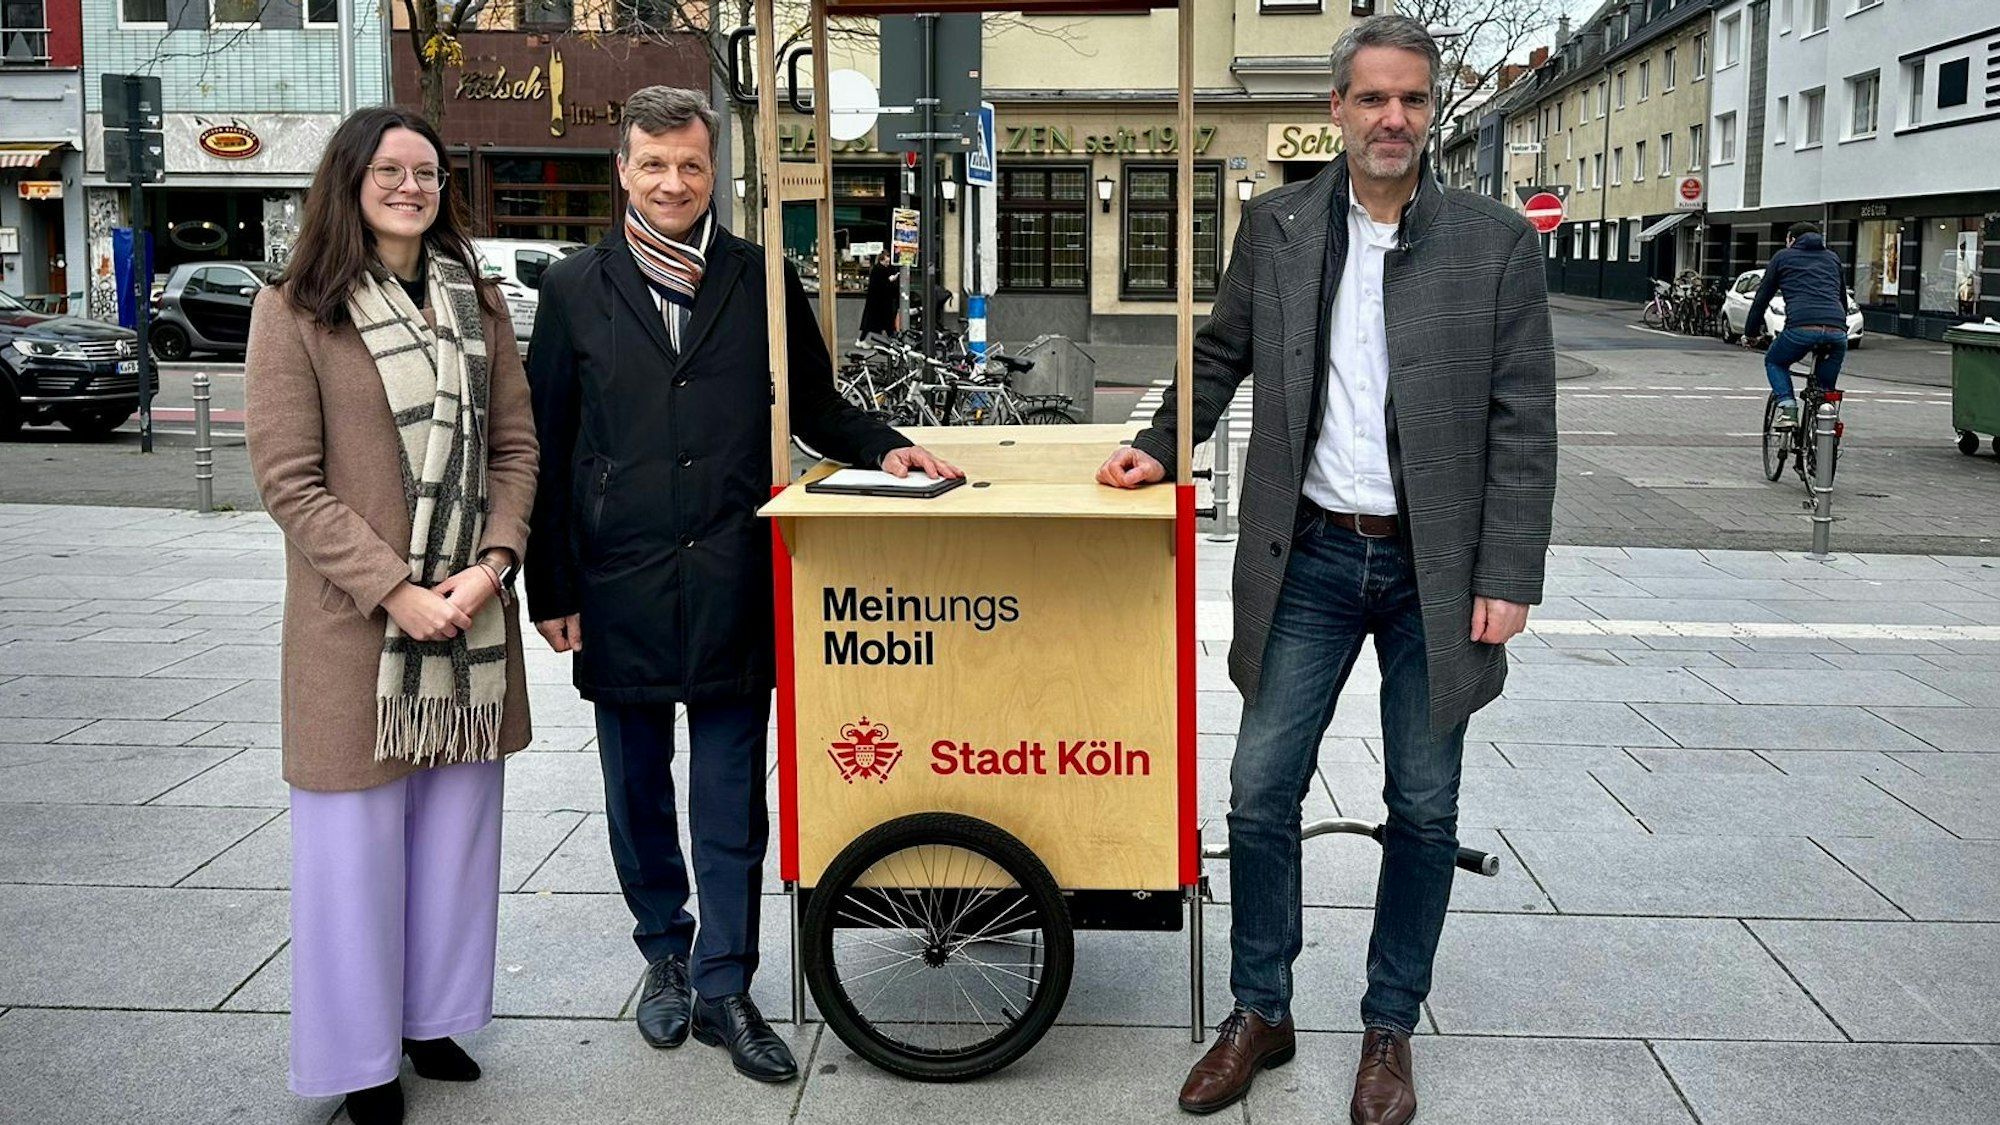 Katharina Pitko, Ascan Egerer und Christian Dörkes stehen mit dem Meinungsmobil der Stadt Köln an der Venloer Straße.